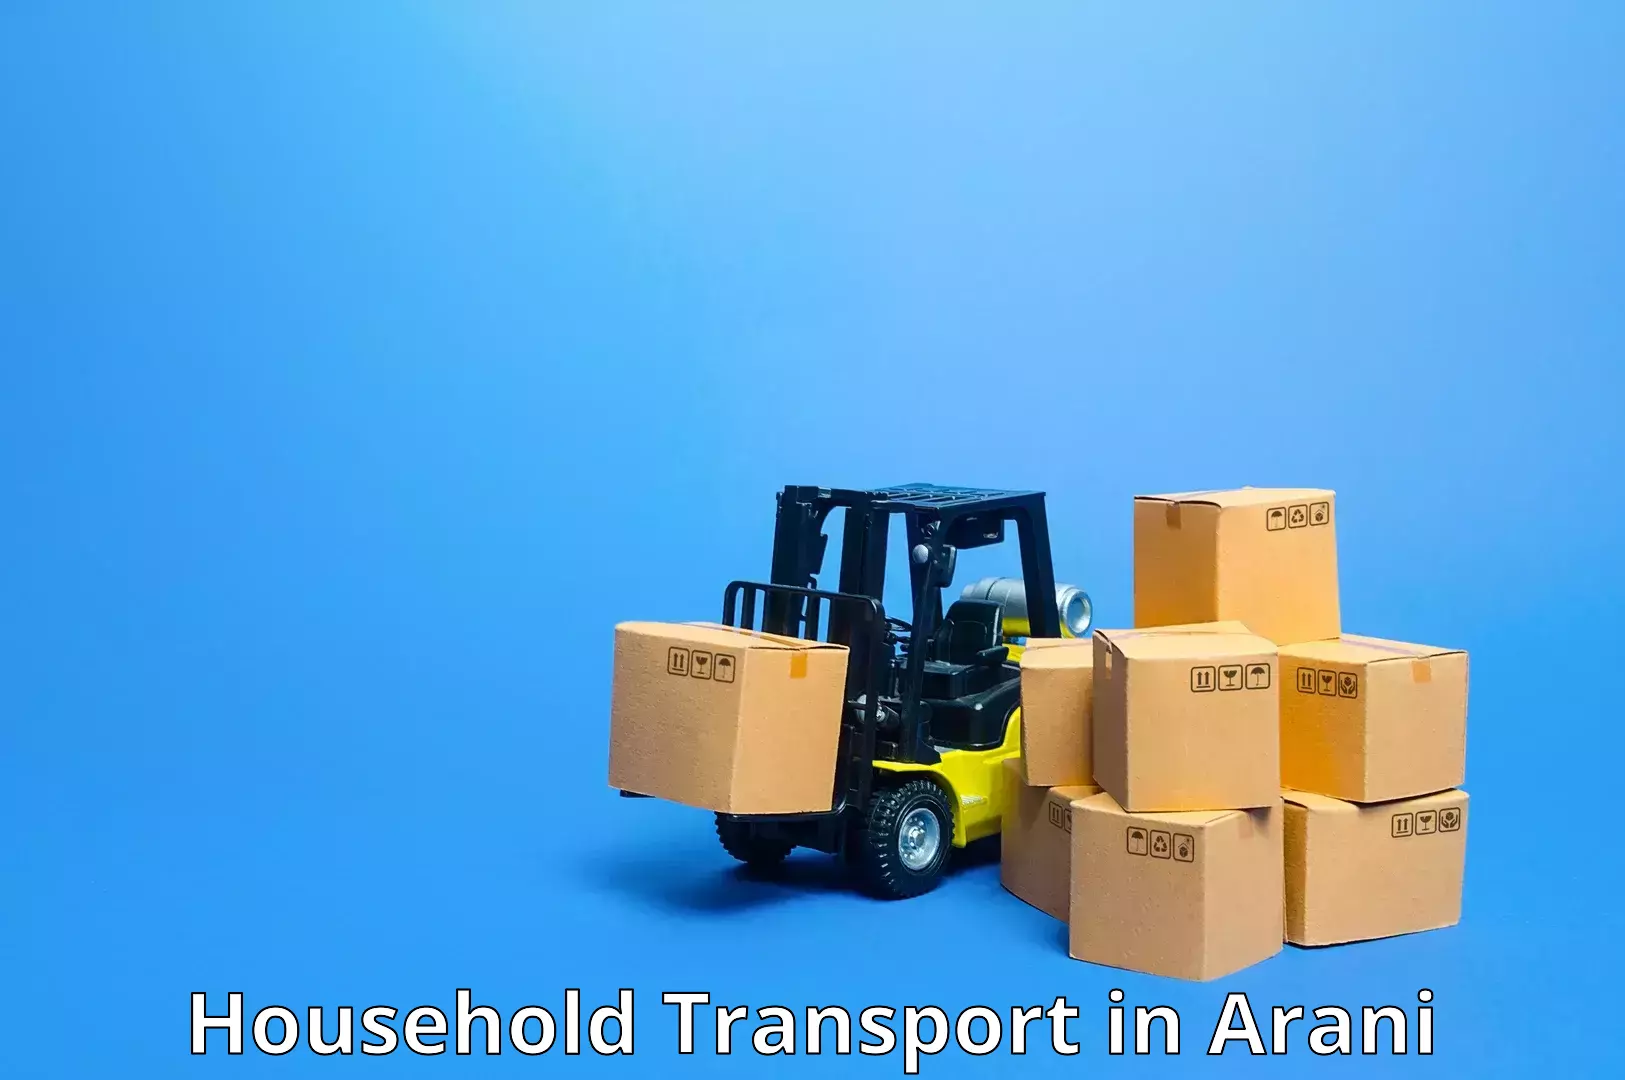 Furniture transport experts in Arani